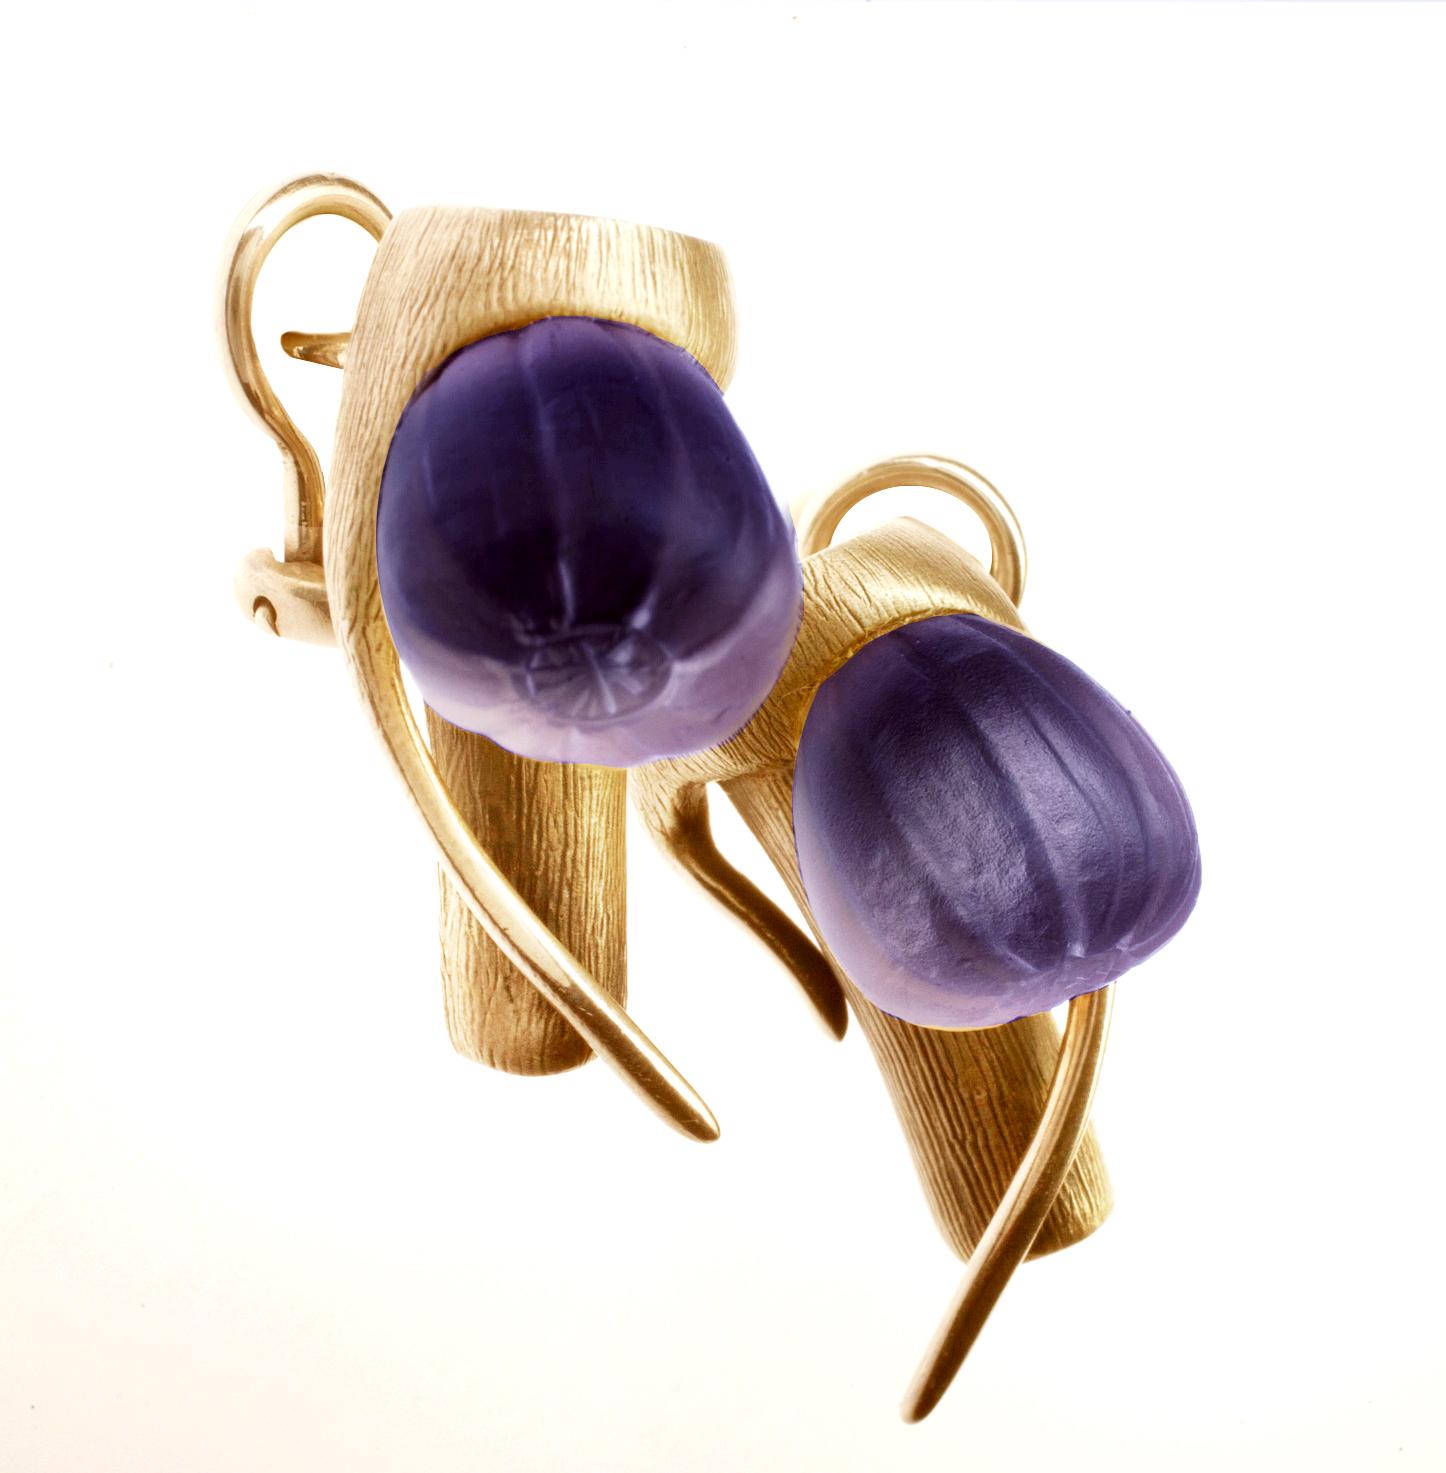 Ces boucles d'oreilles contemporaines de type cocktail Fig sont en or rose 18 carats avec de tendres améthystes givrées. La collection a fait l'objet d'un éditorial et d'un numéro publié dans Harper's Bazaar UA. Les boucles d'oreilles ont été